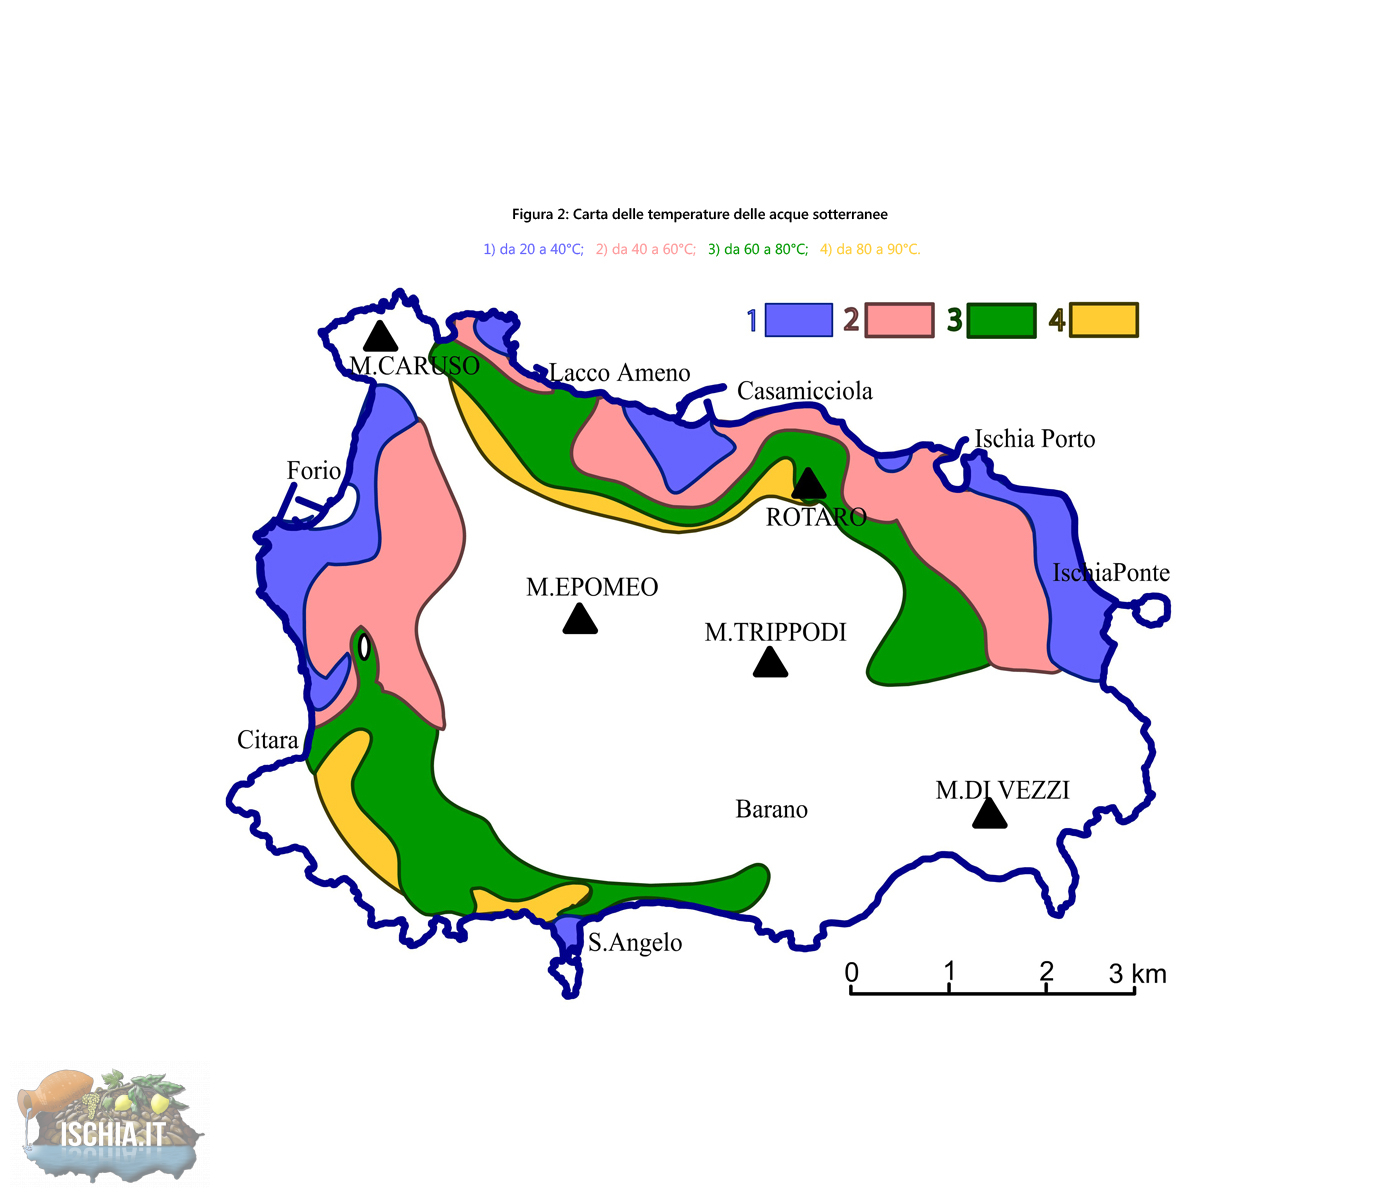 Mappa delle temperature delle acque dell'isola d'Ischia